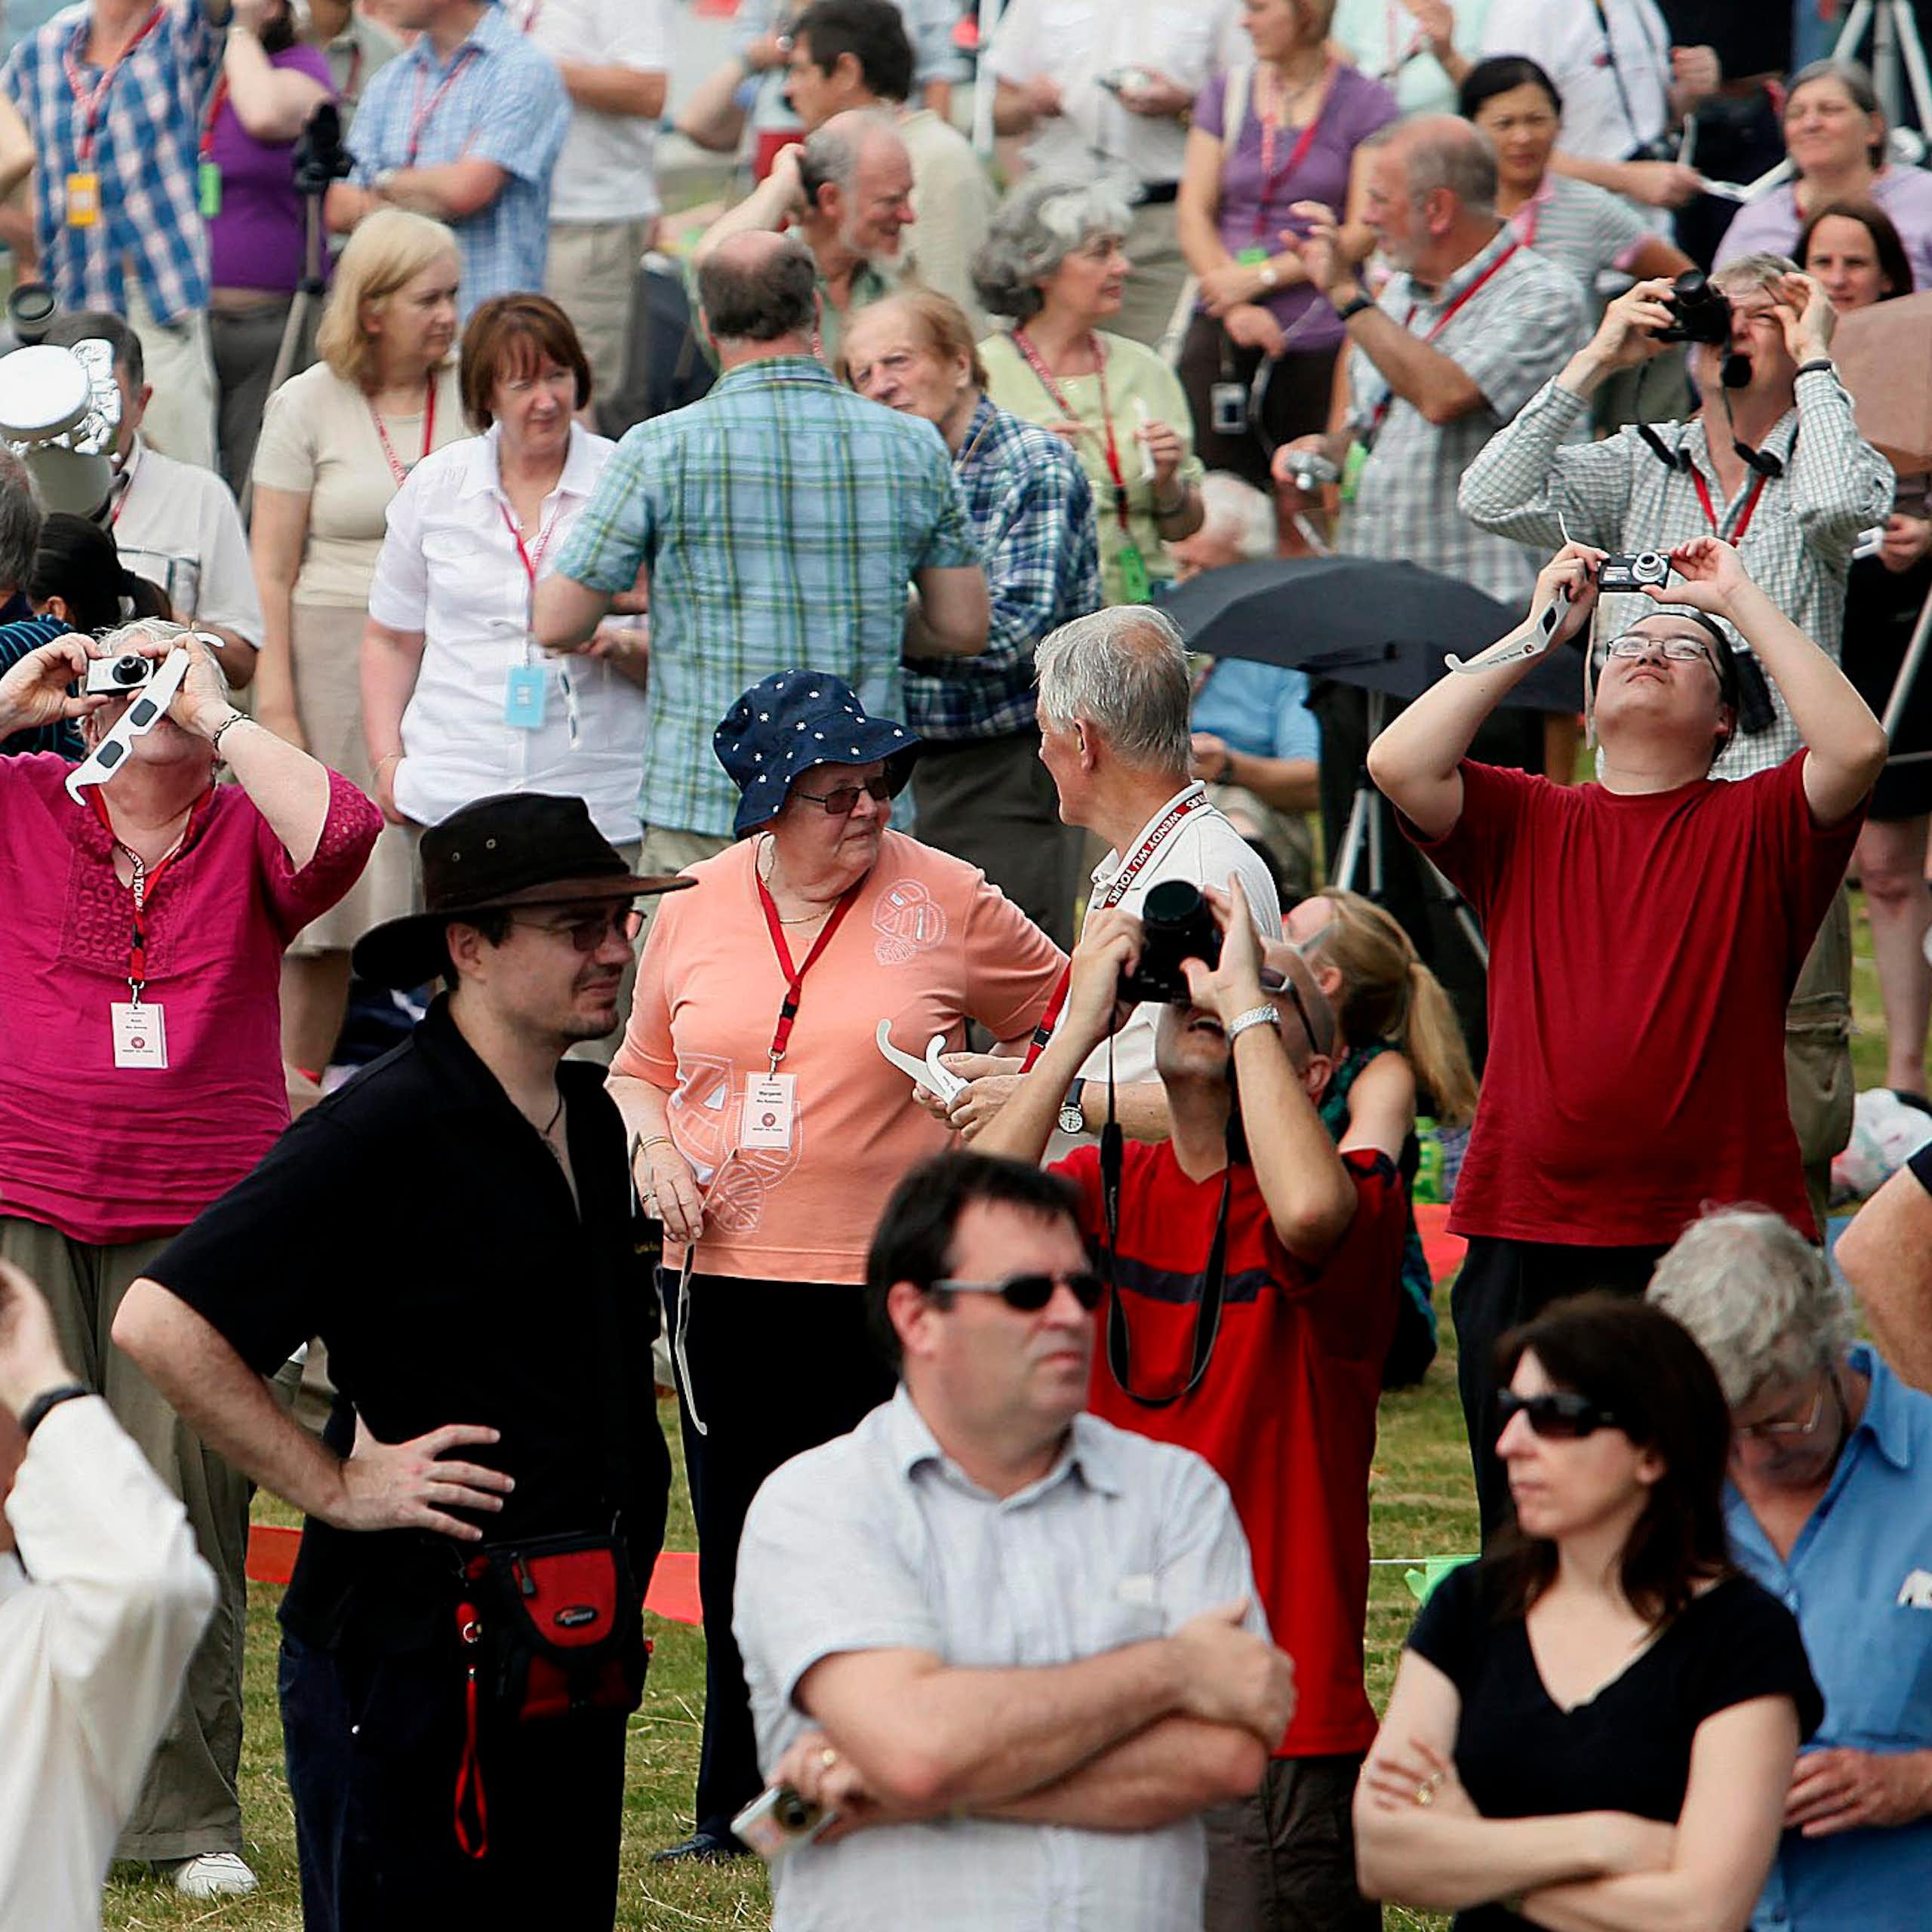 Des personnes debout regardent le ciel en portant des lunettes d'éclipse, tandis que des personnes dans la foule tiennent des appareils photo.